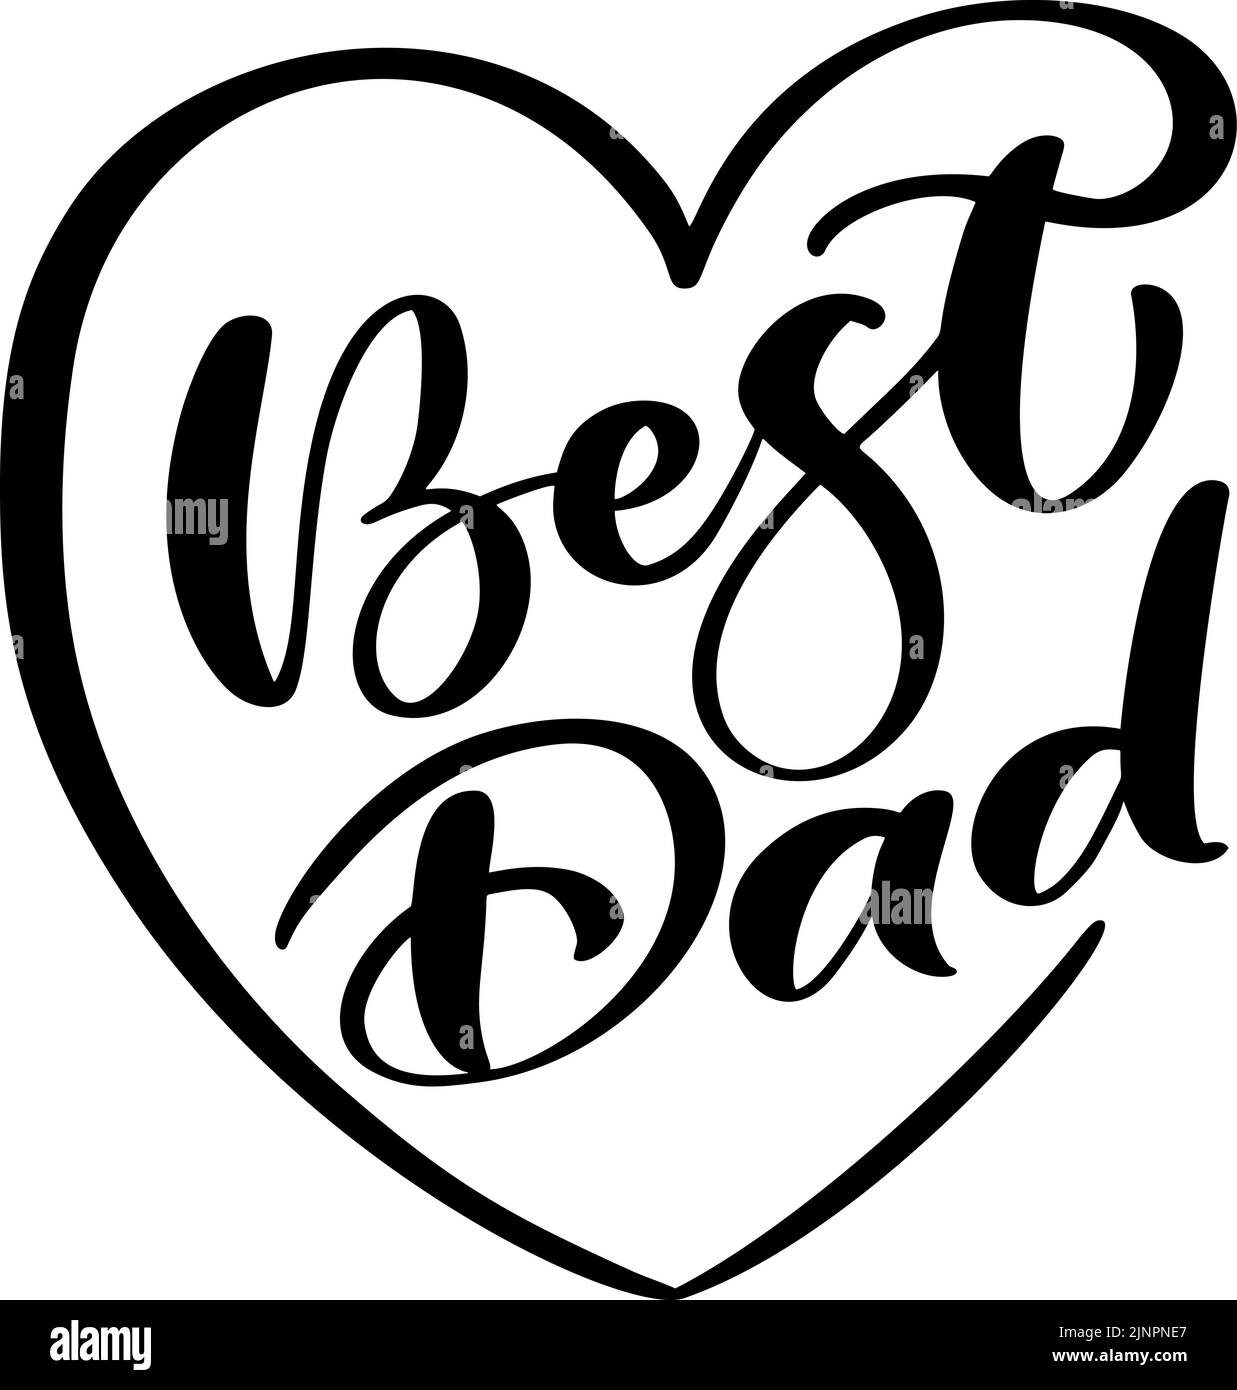 Handgeschriebener Vektor Kalligraphie Text Best Dad in Herz-Rahmen. Schriftzug Poster Liebe Familie flache Design Hintergrund. Handgezeichnetes Banner, Happy Fathers Day Stock Vektor